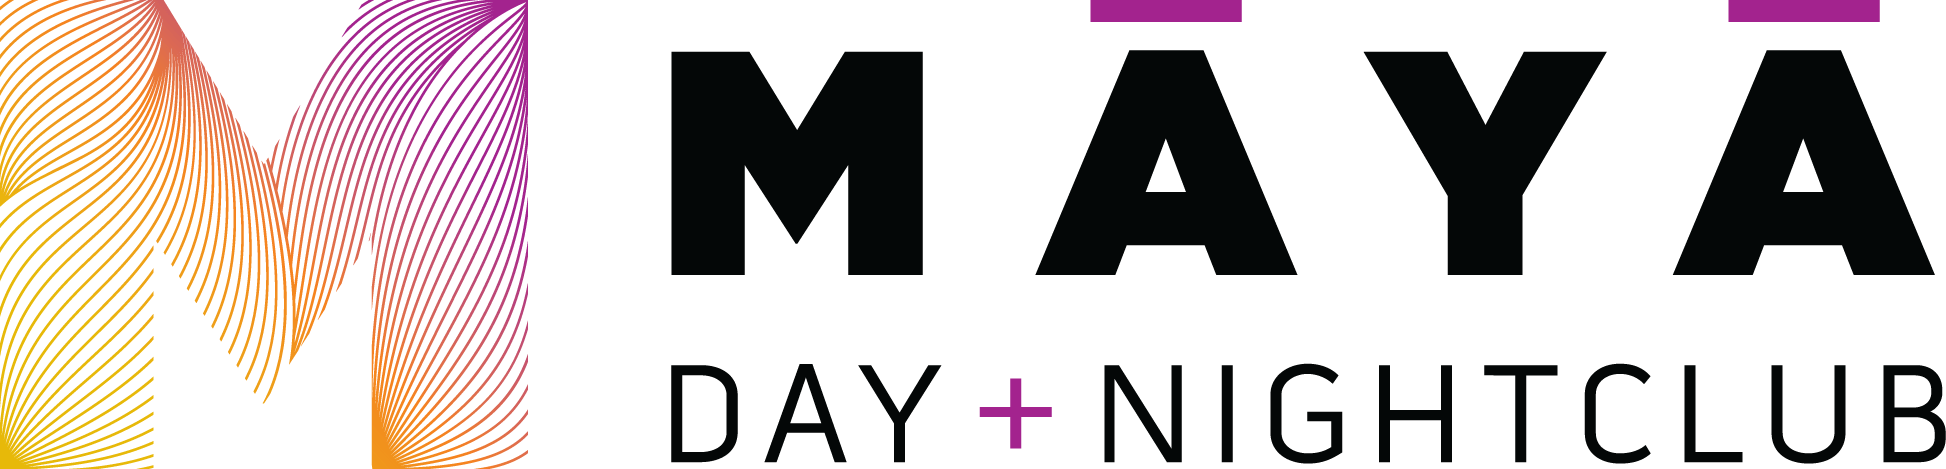 Scottsdale Logo - Maya Day & Nightclub